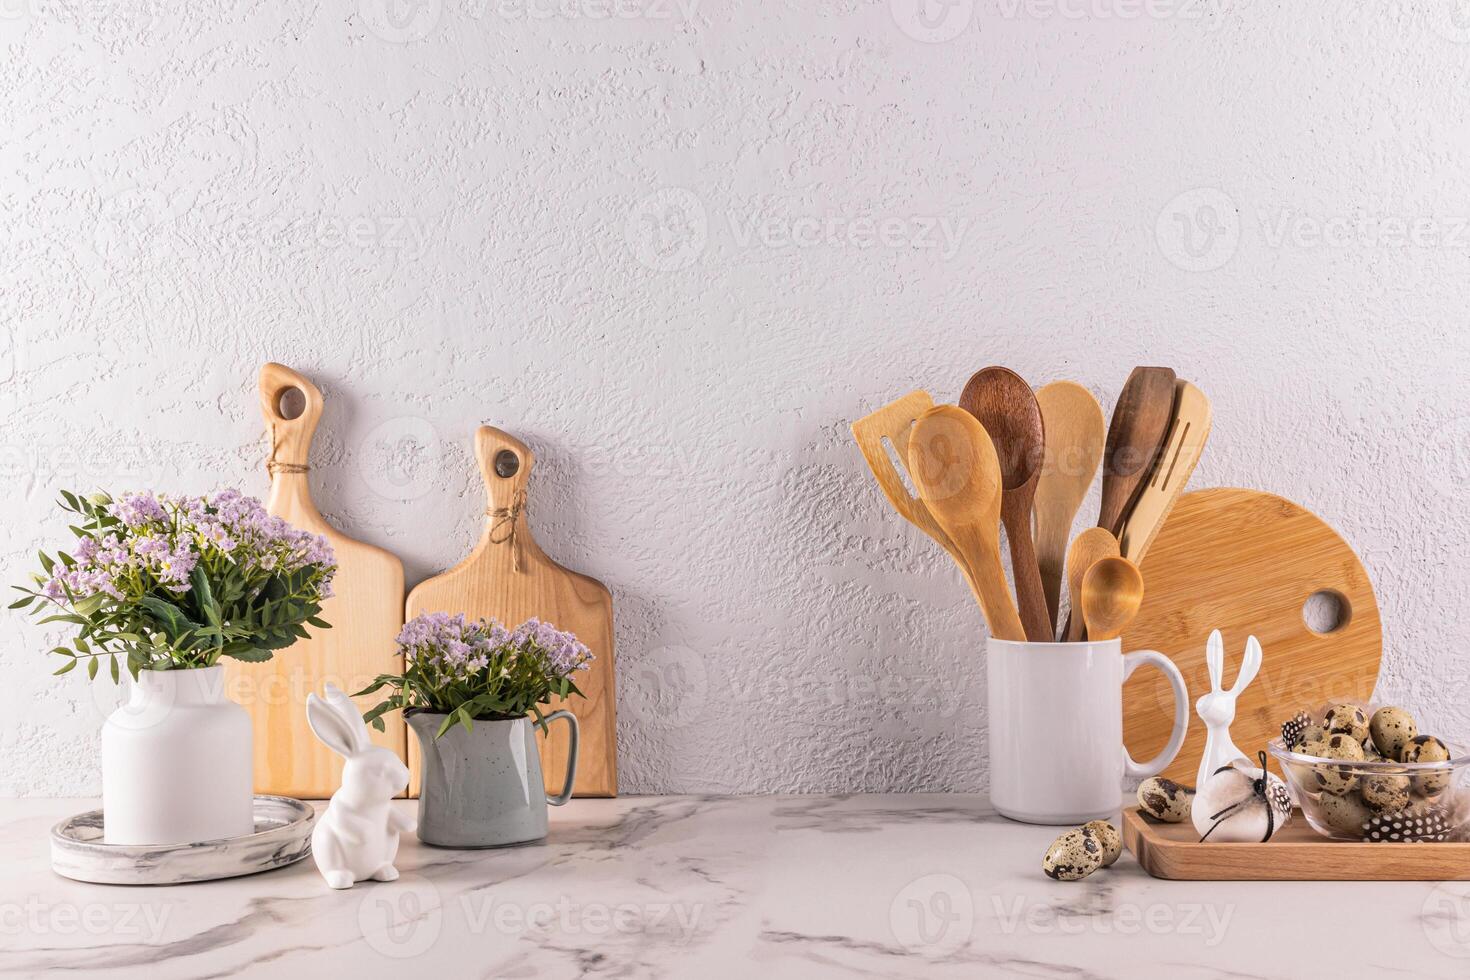 en bois cuisine ustensiles fabriqué de respectueux de la nature matériaux, printemps fleurs dans une vase et cruche, Pâques lapin figurines sur une marbre comptoir. de face voir. photo